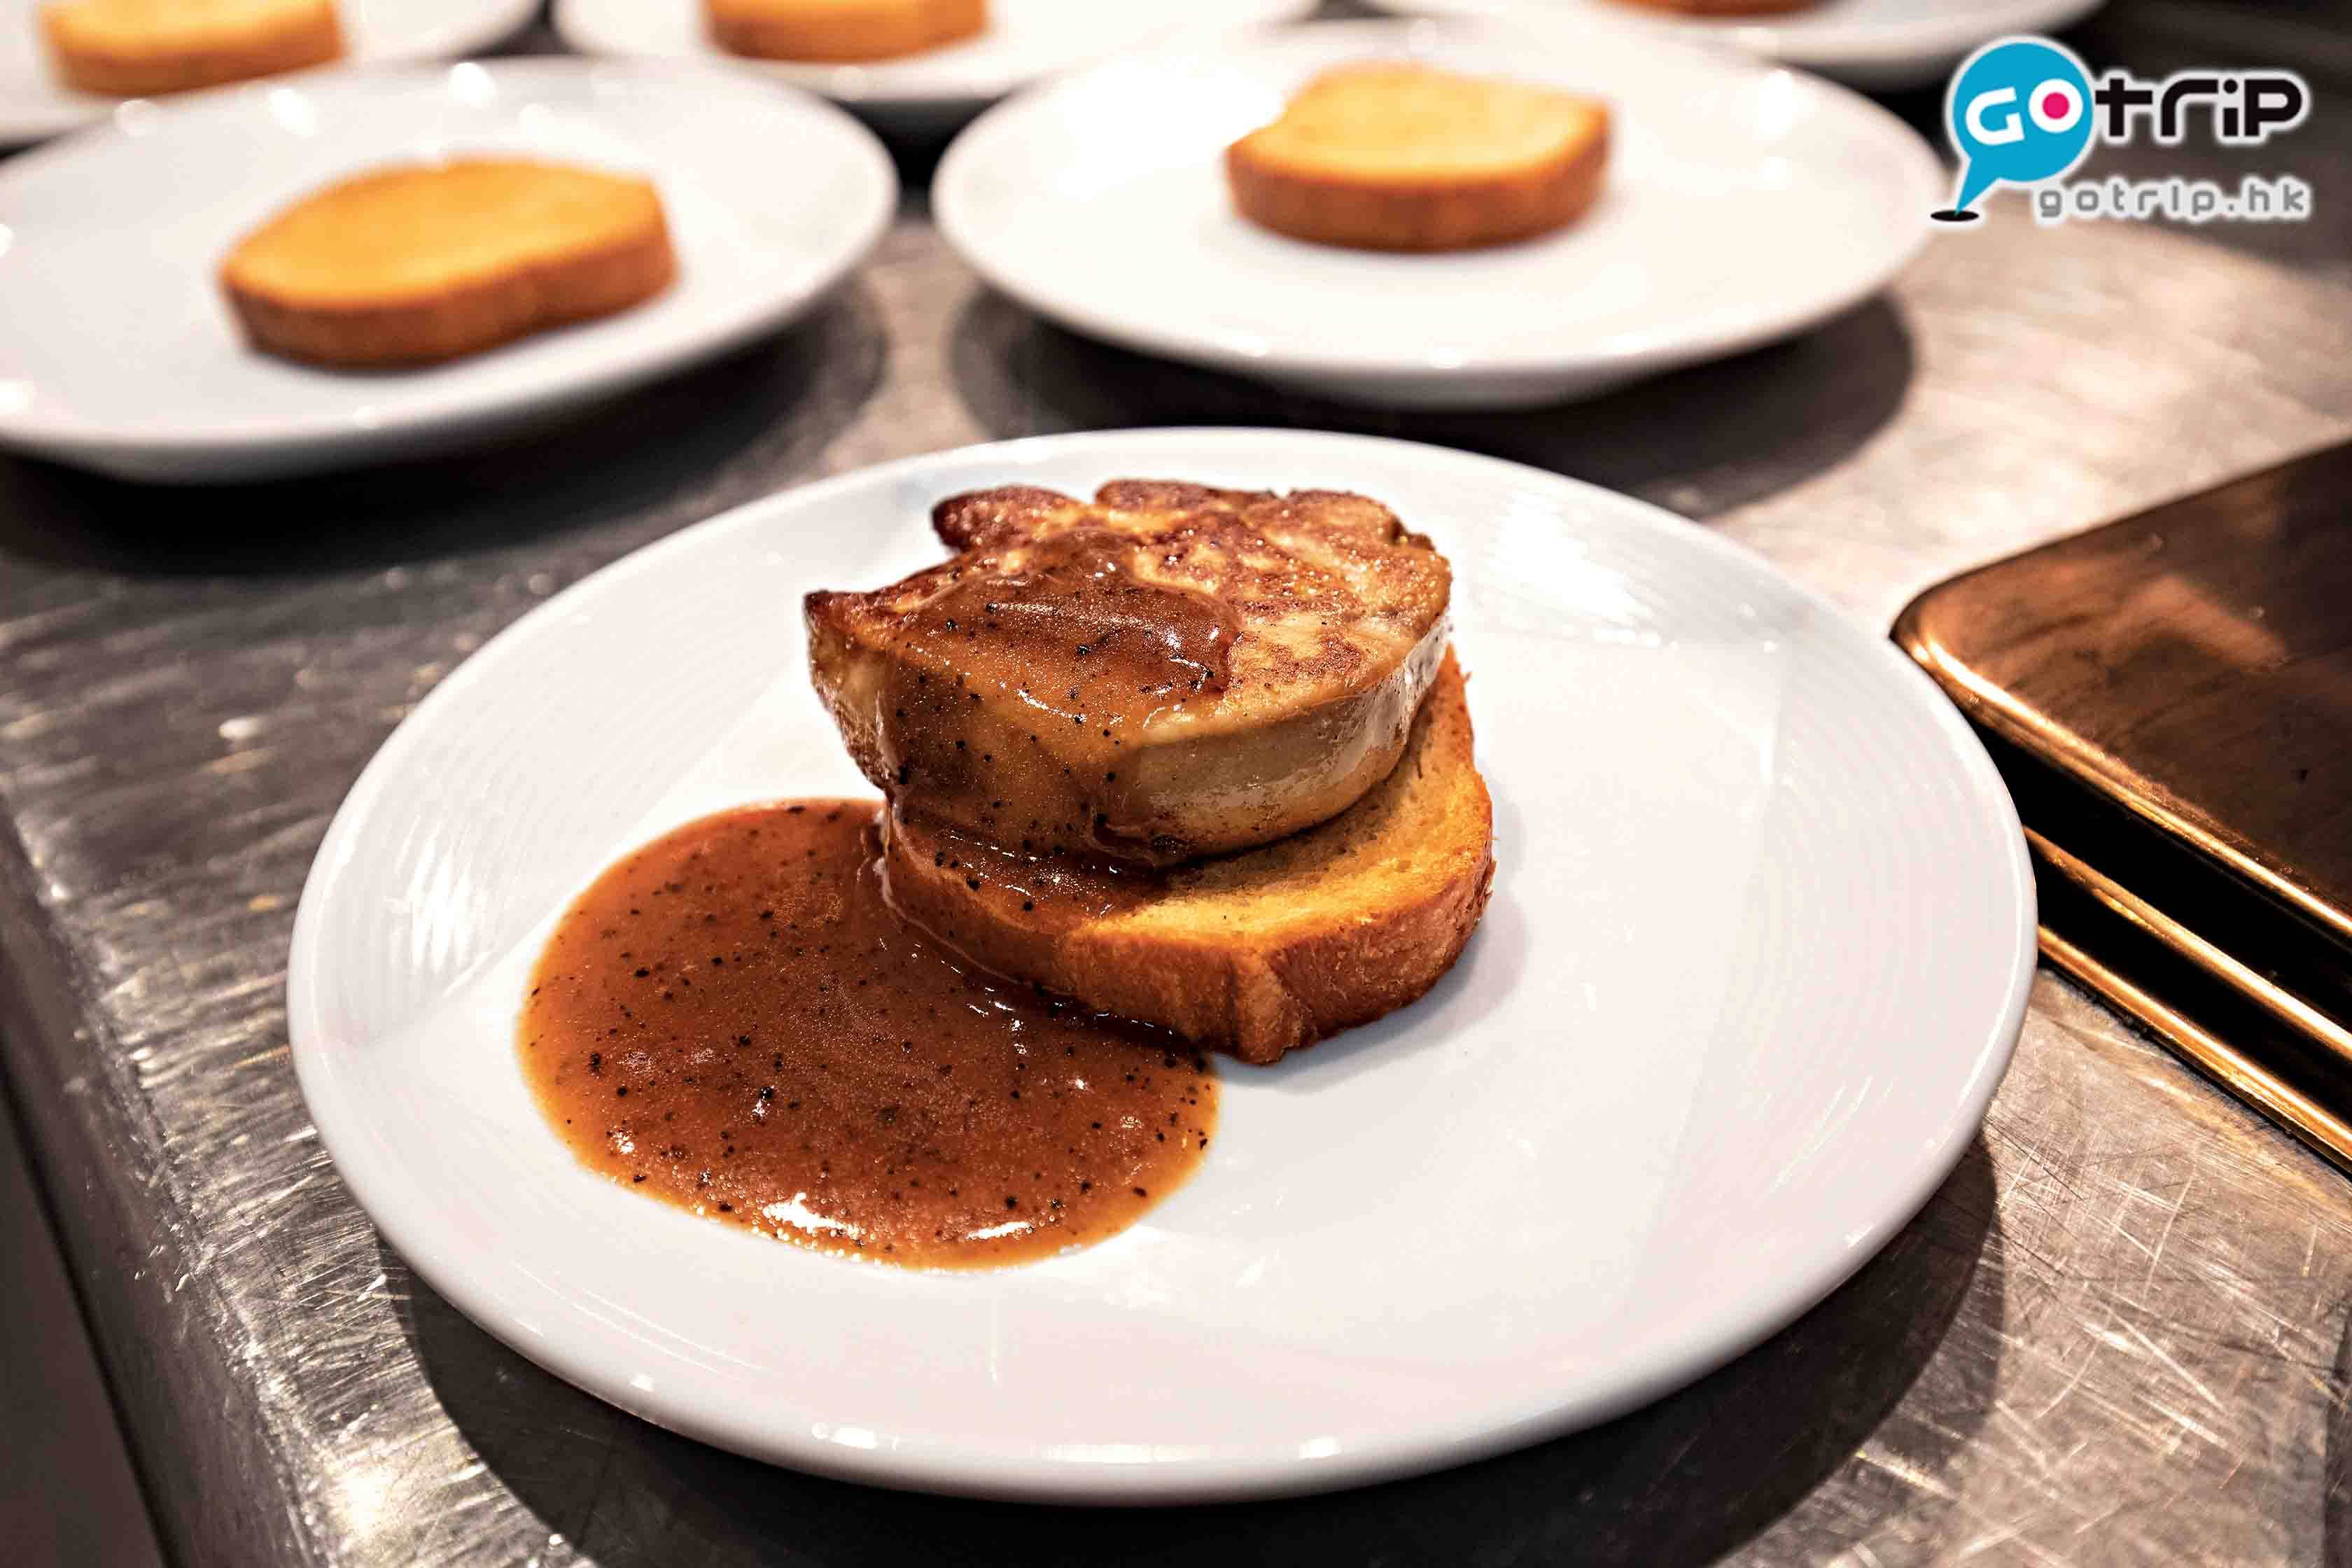 澳門自助餐2019 法國鵝肝多士，由廚師現場即煎， 鵝肝夠厚身， 油脂豐腴，配黑松露醬，match！